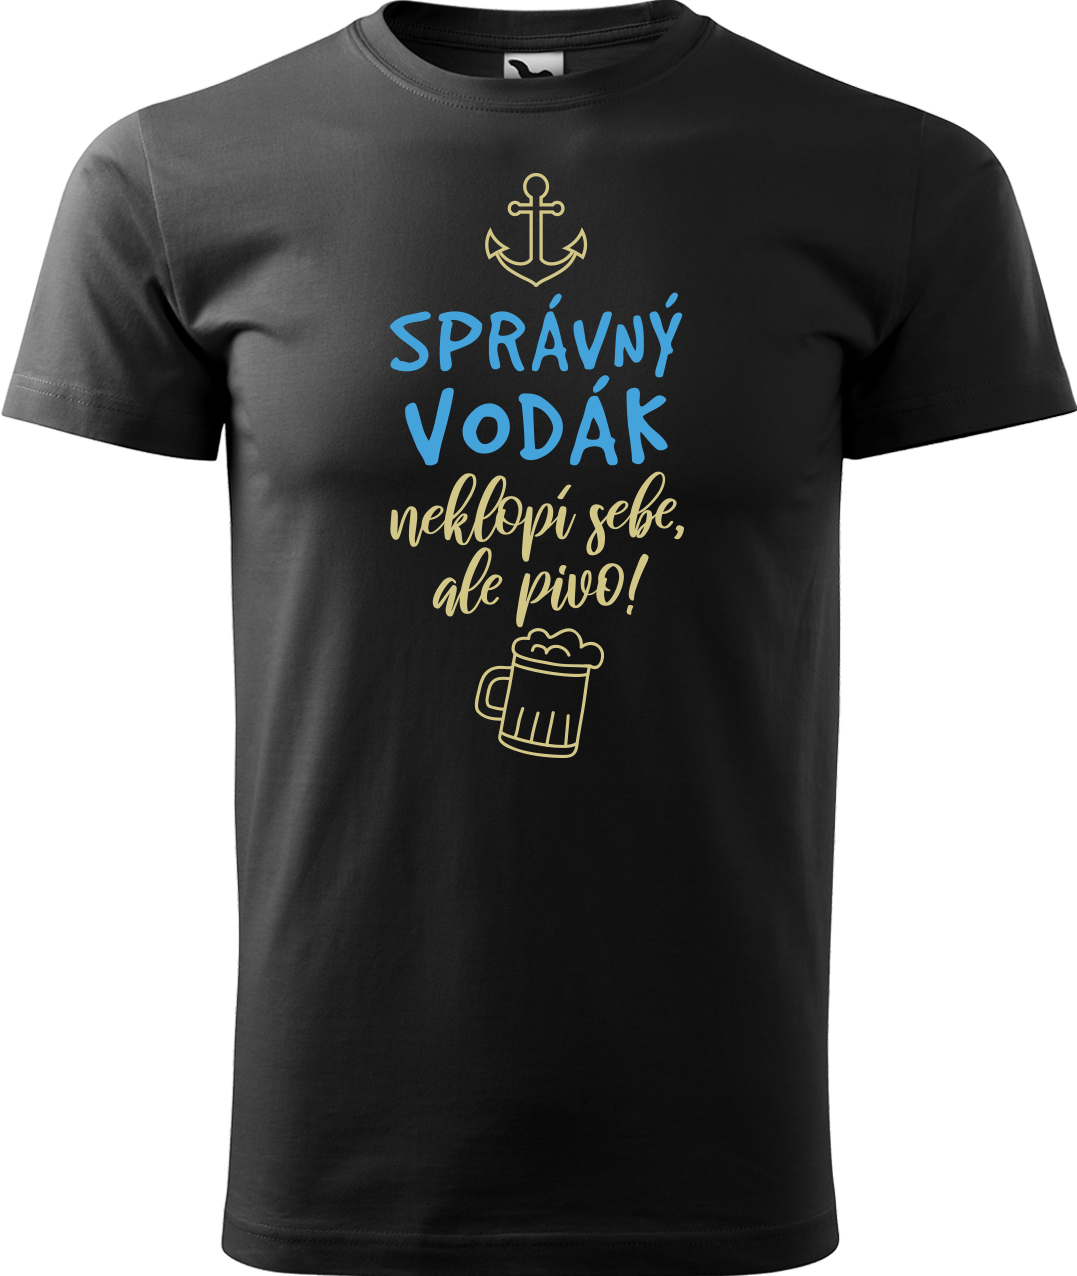 Pánské vodácké tričko - Správný vodák Velikost: 2XL, Barva: Černá (01)